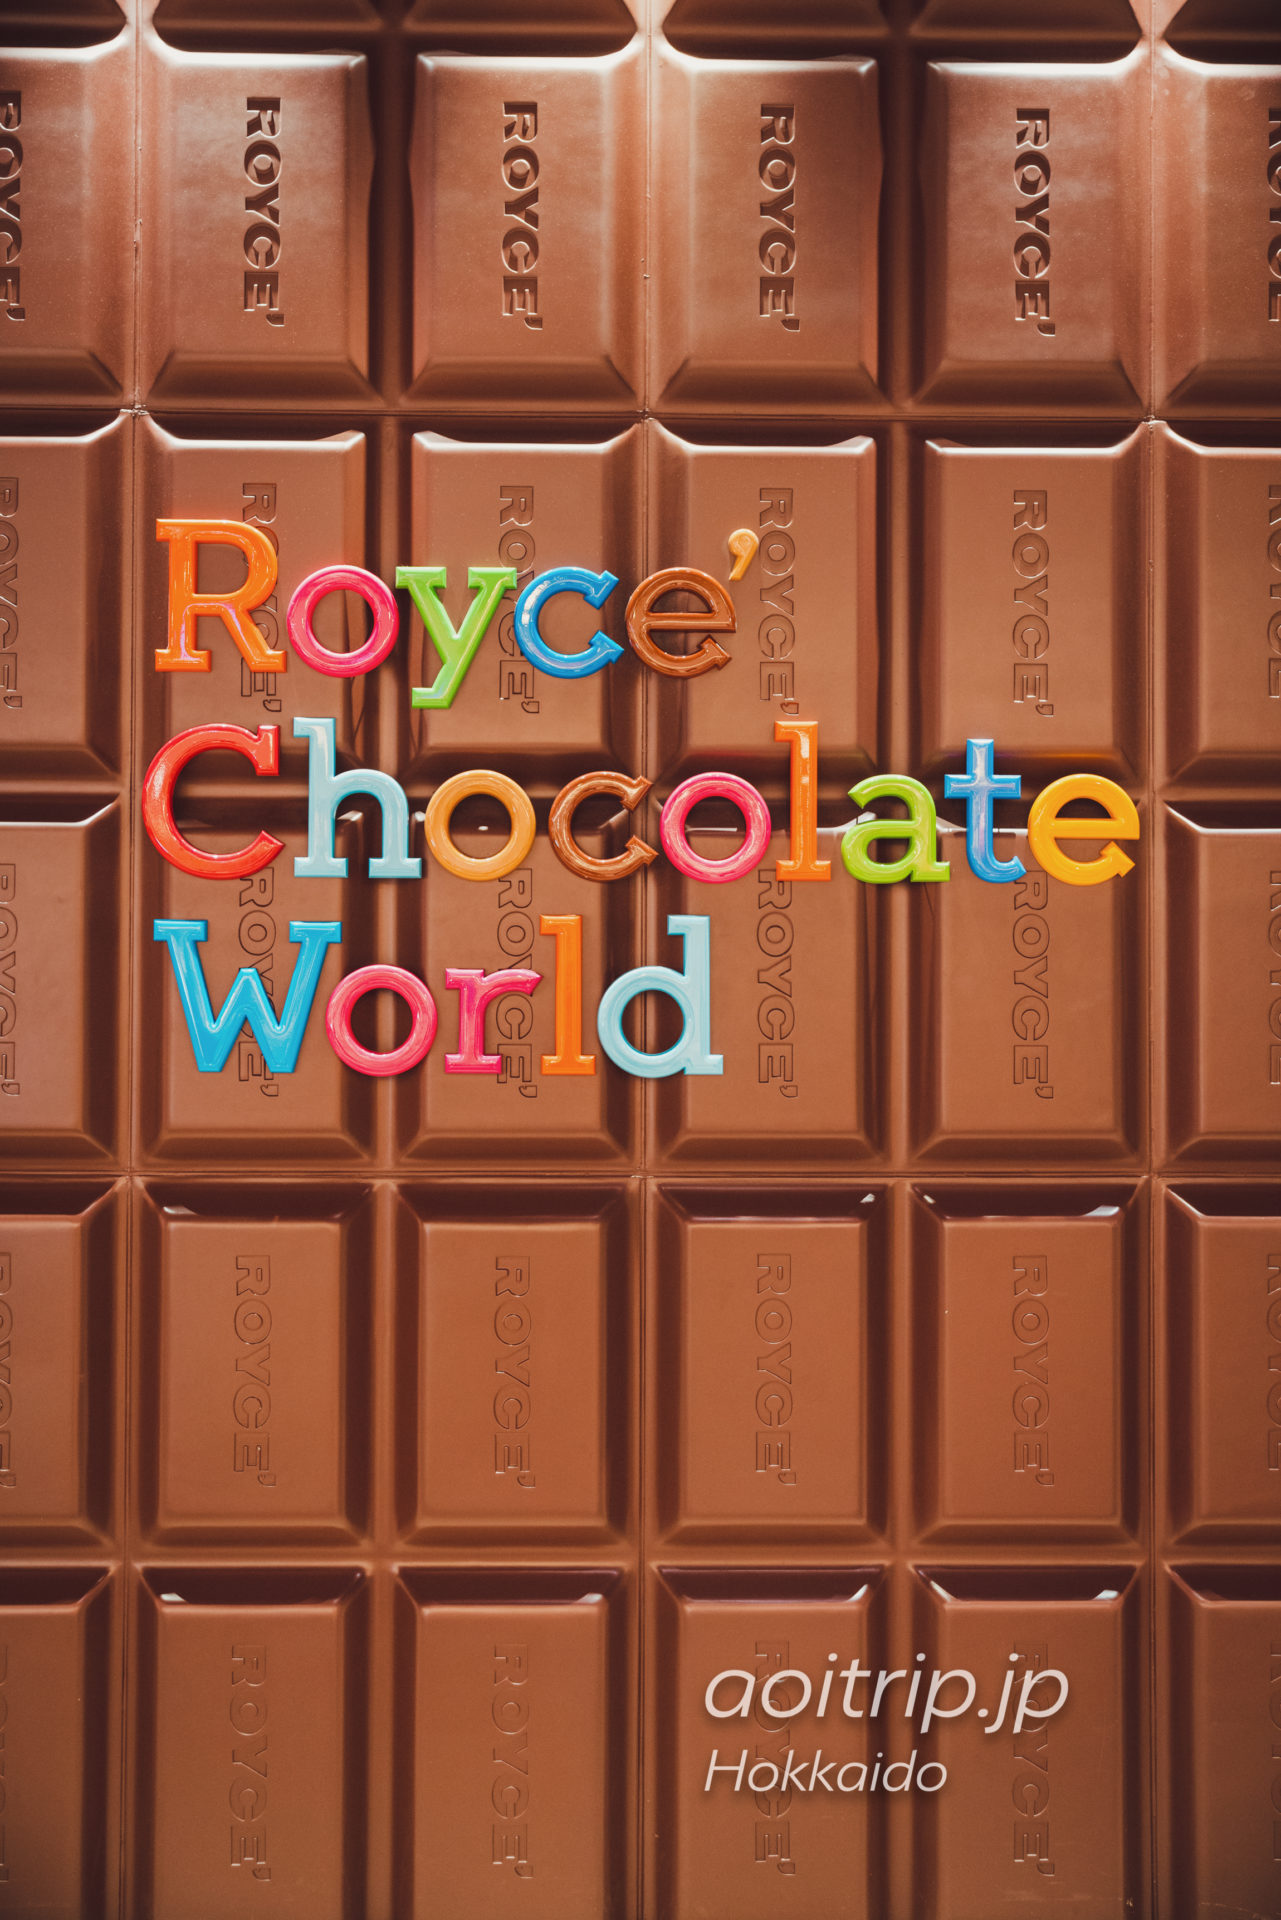 新千歳空港 Royce' Chocolate World